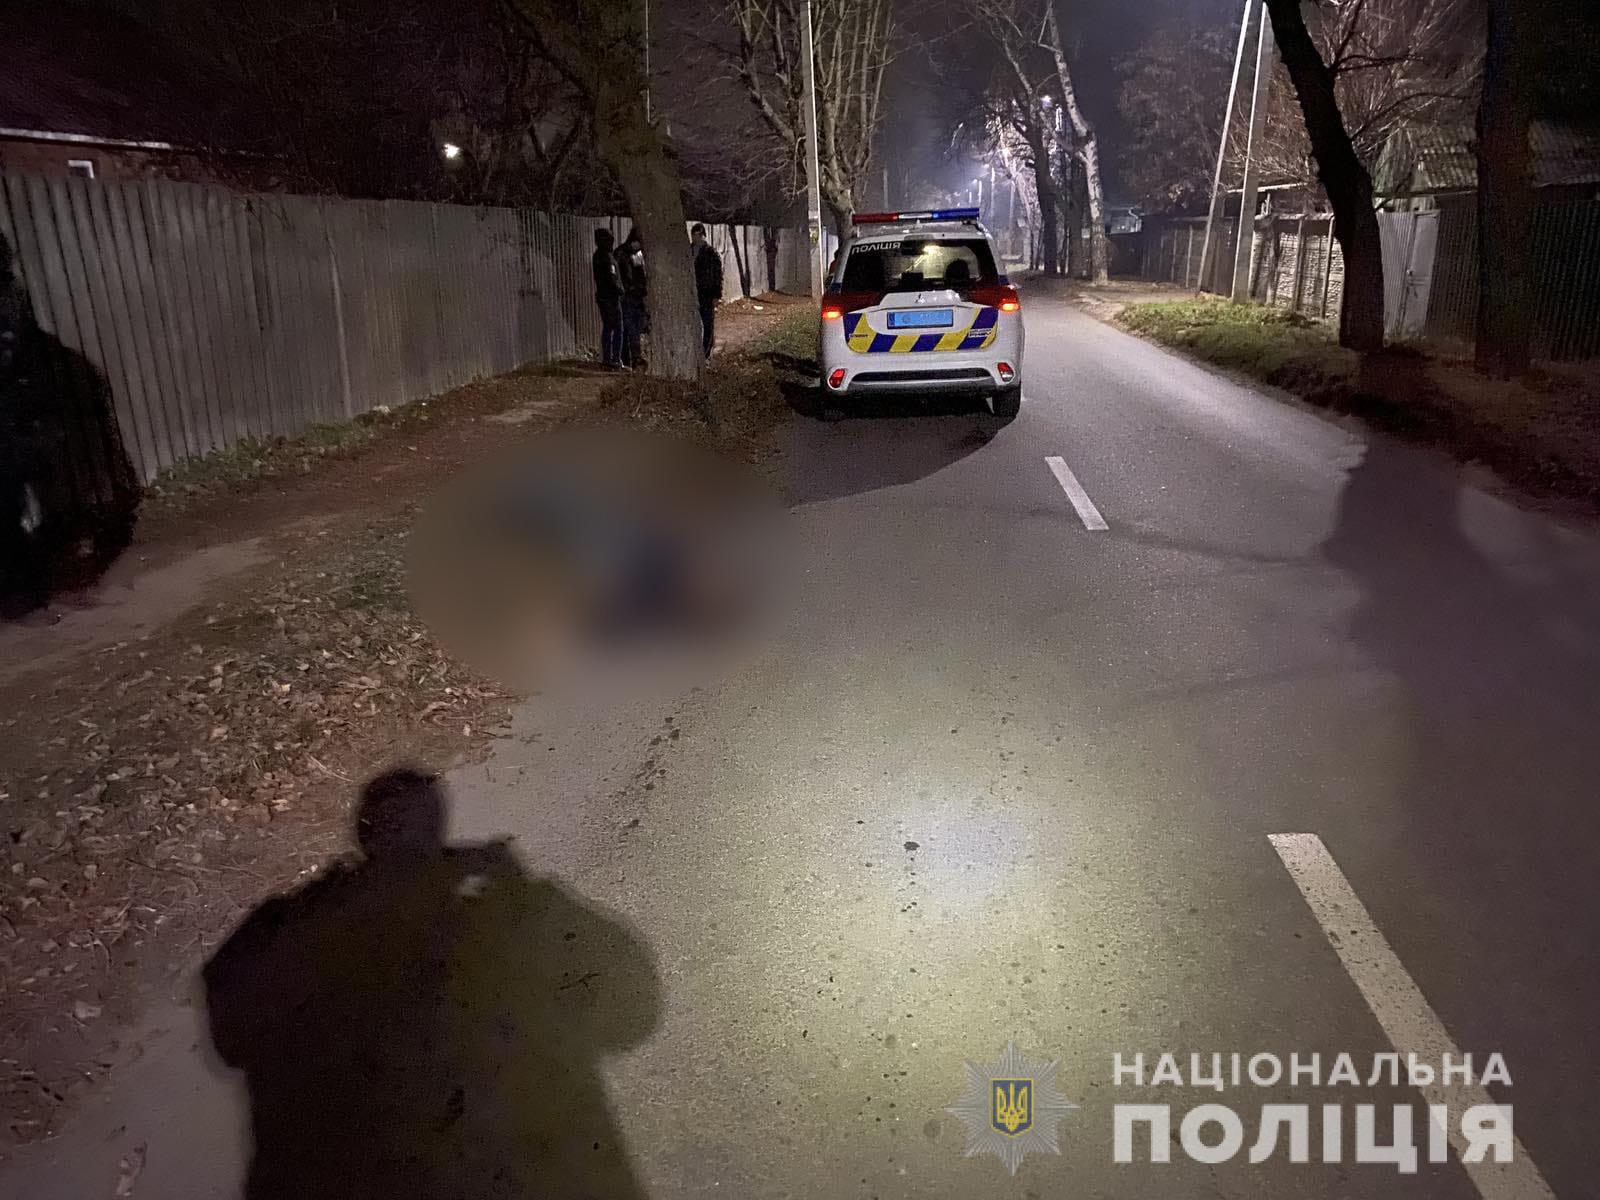 Полиция расследует обстоятельства гибели пешехода в Дергачах (фото)